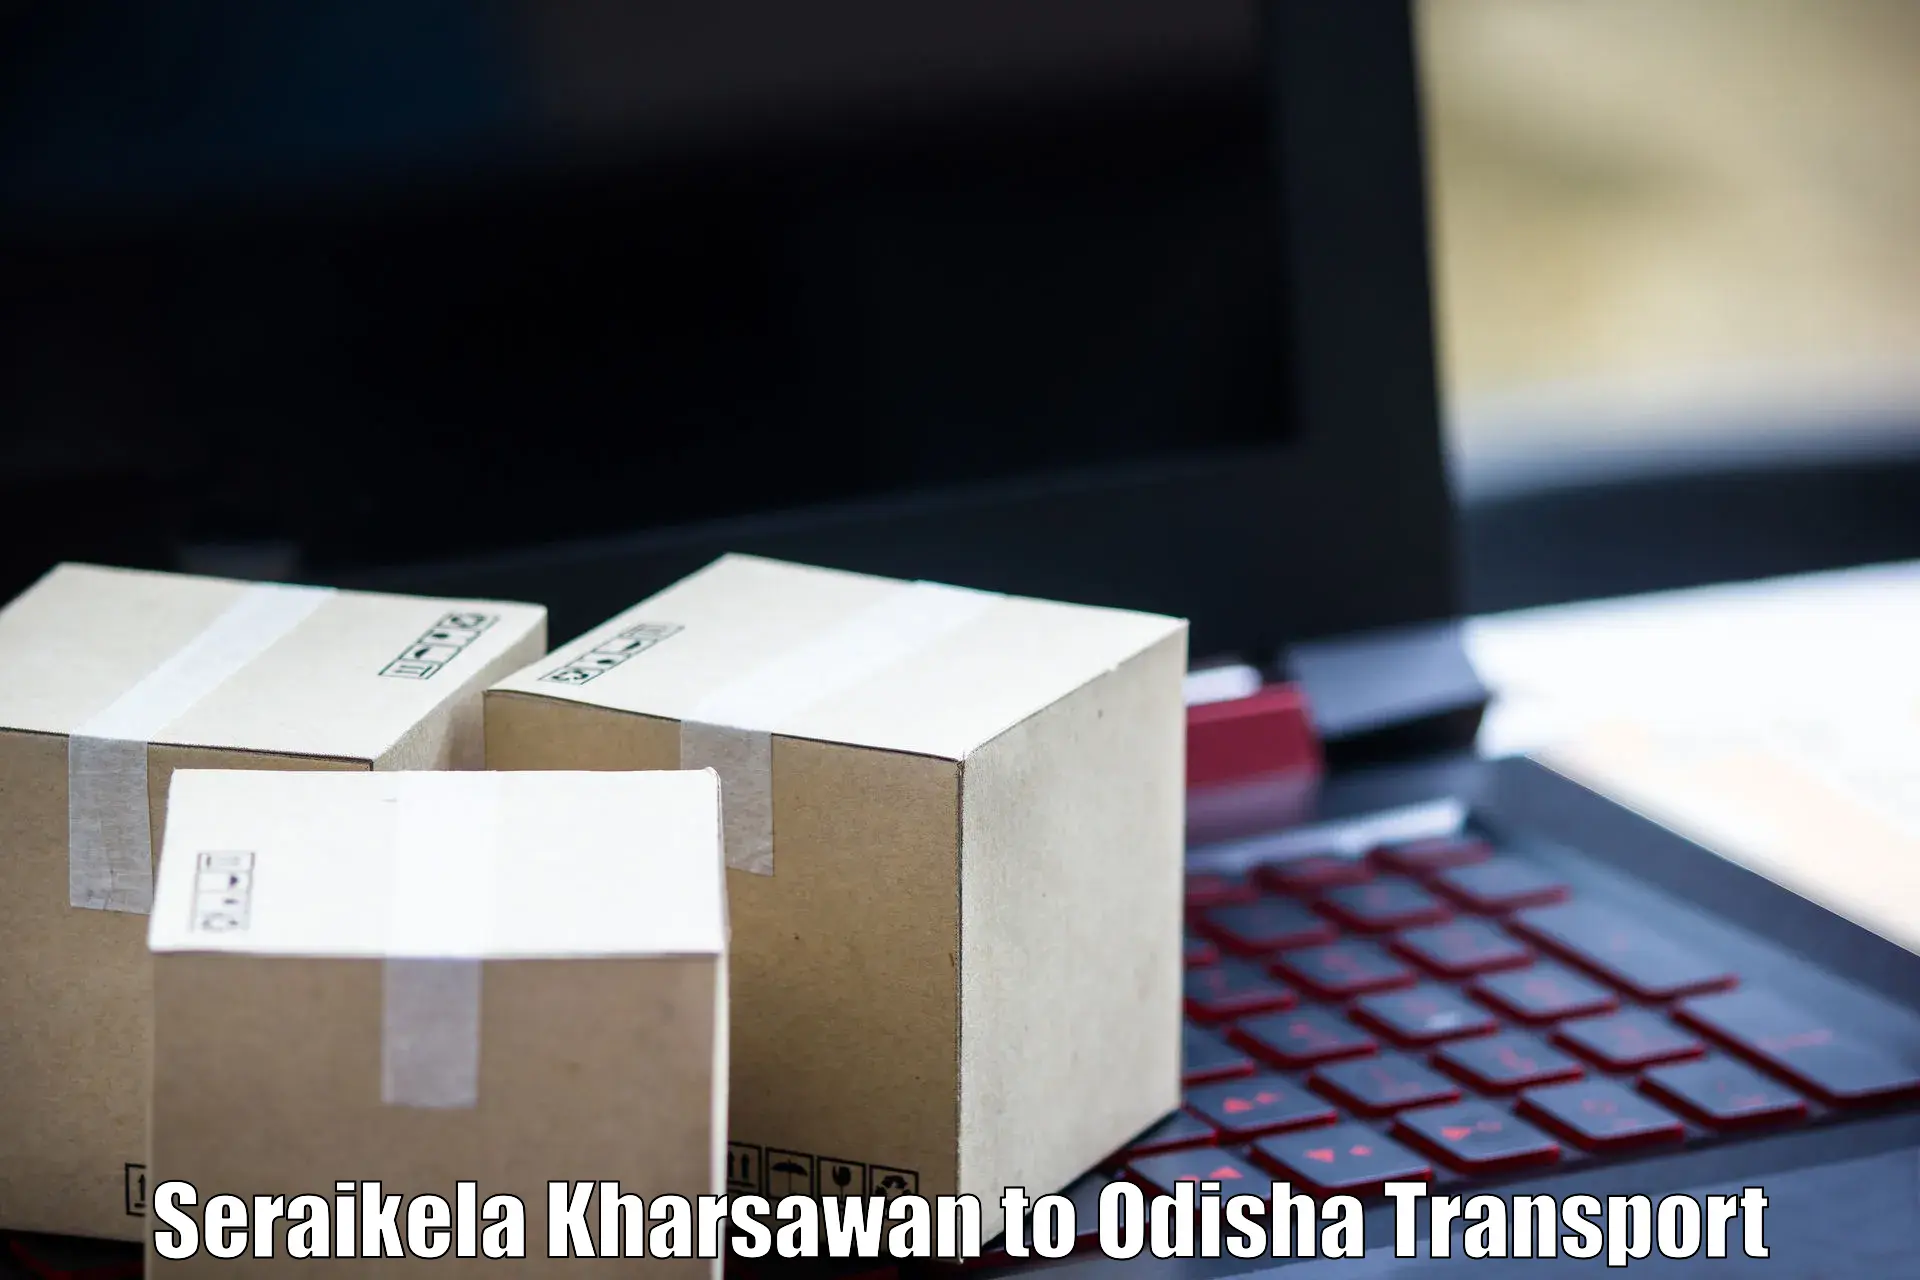 Furniture transport service Seraikela Kharsawan to Basta